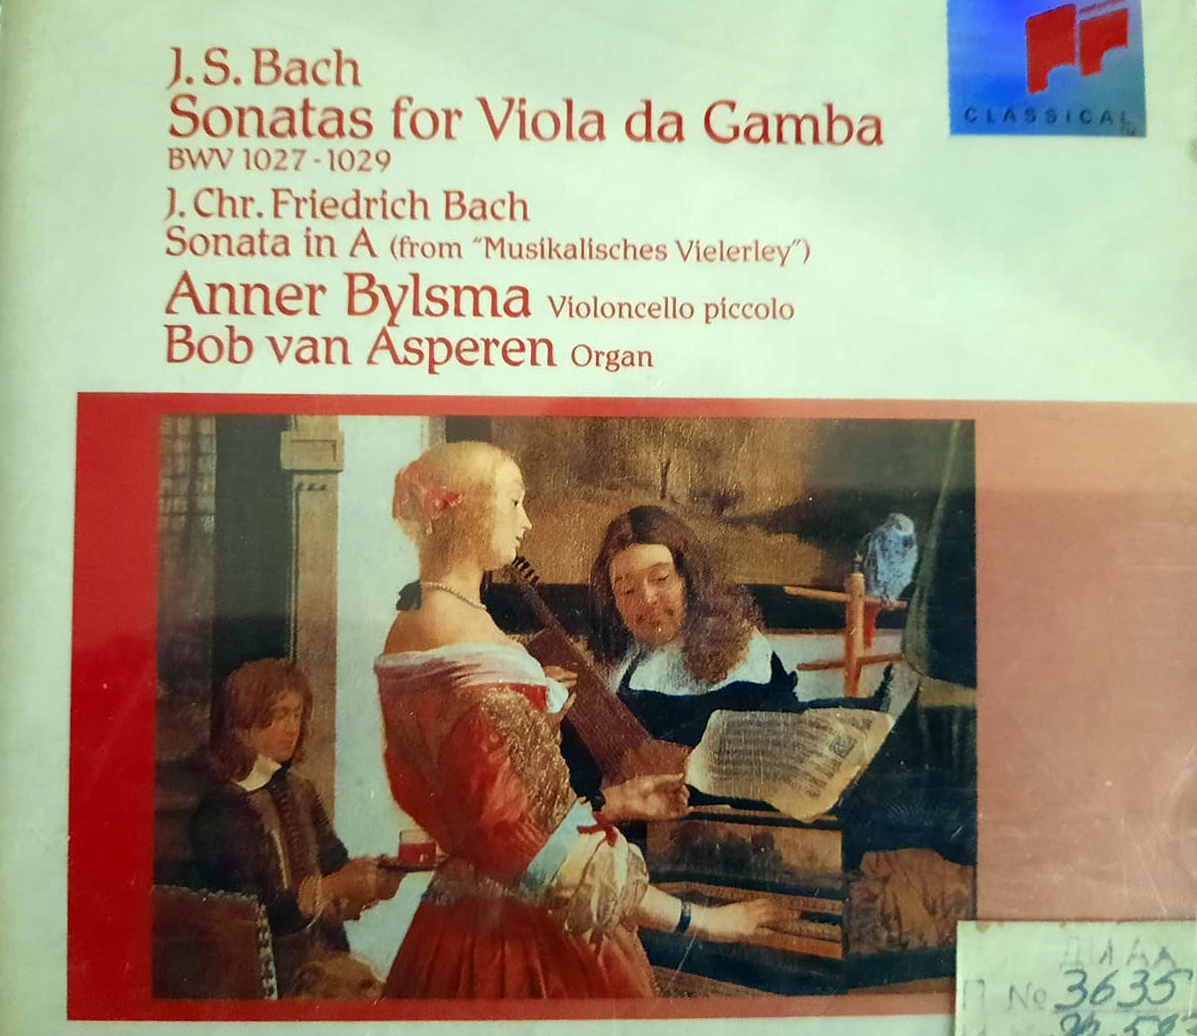 Սոնատներ վիոլա դա գամբայի համար BWV 1027-1029